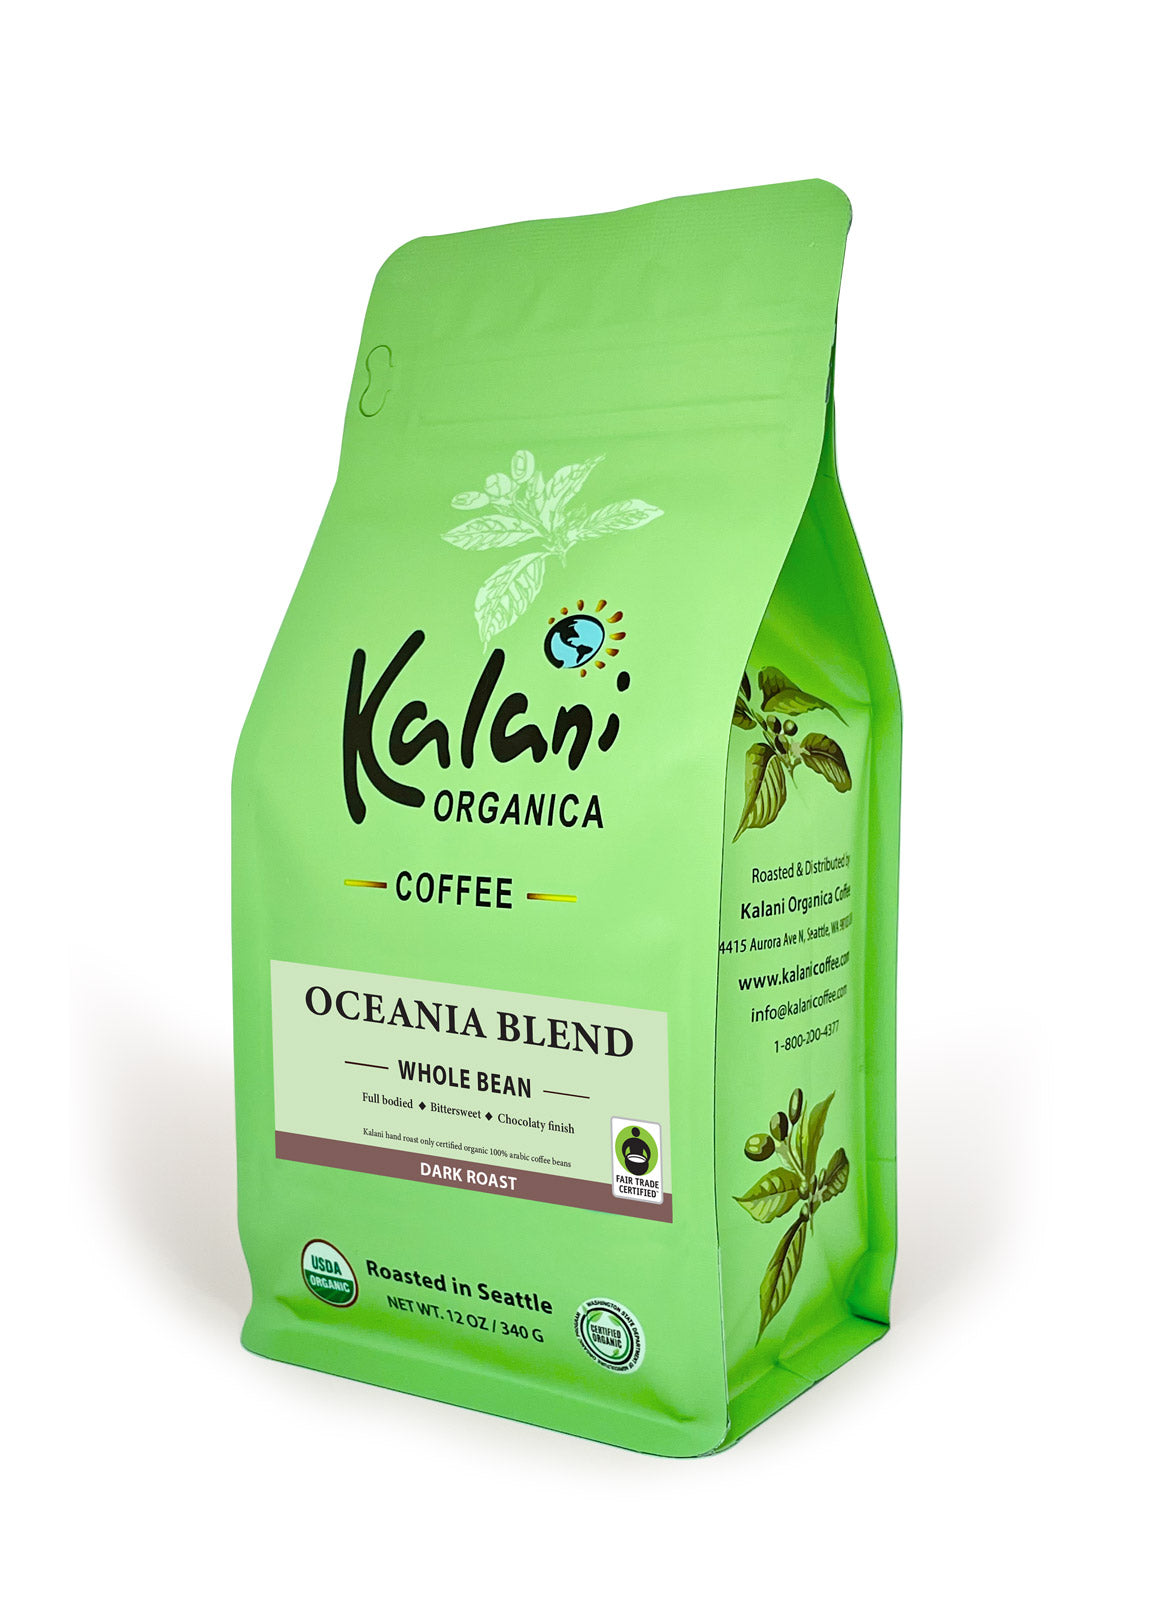 Oceania Blend Fair Trade & Organic